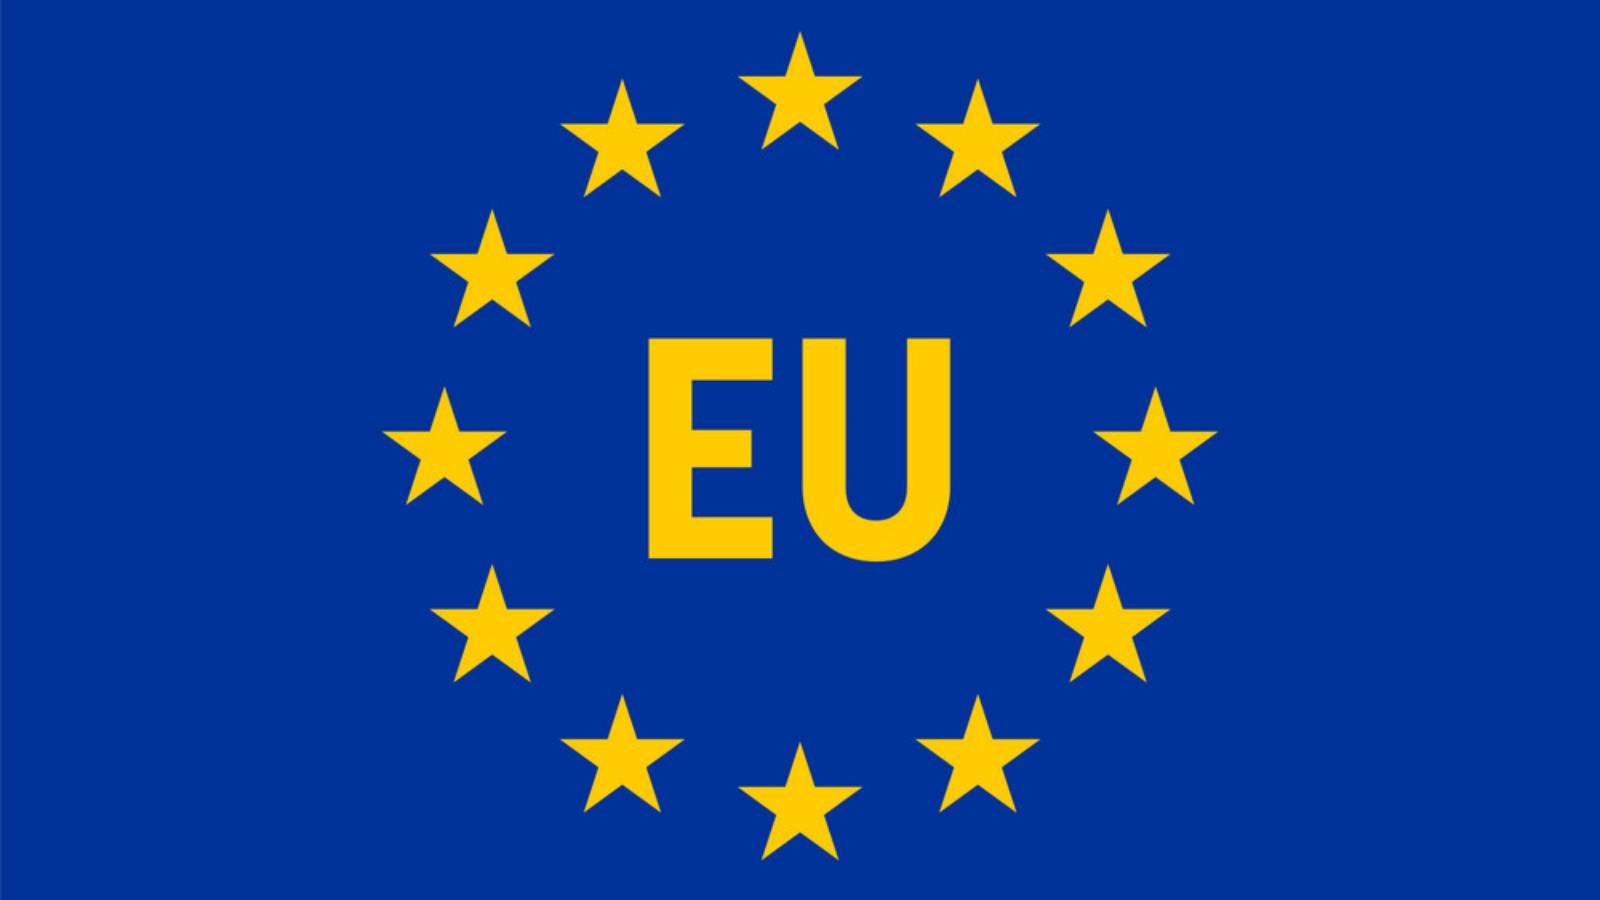 Advarsel fra Europa-Kommissionen Millioner af rumænere over hele landet